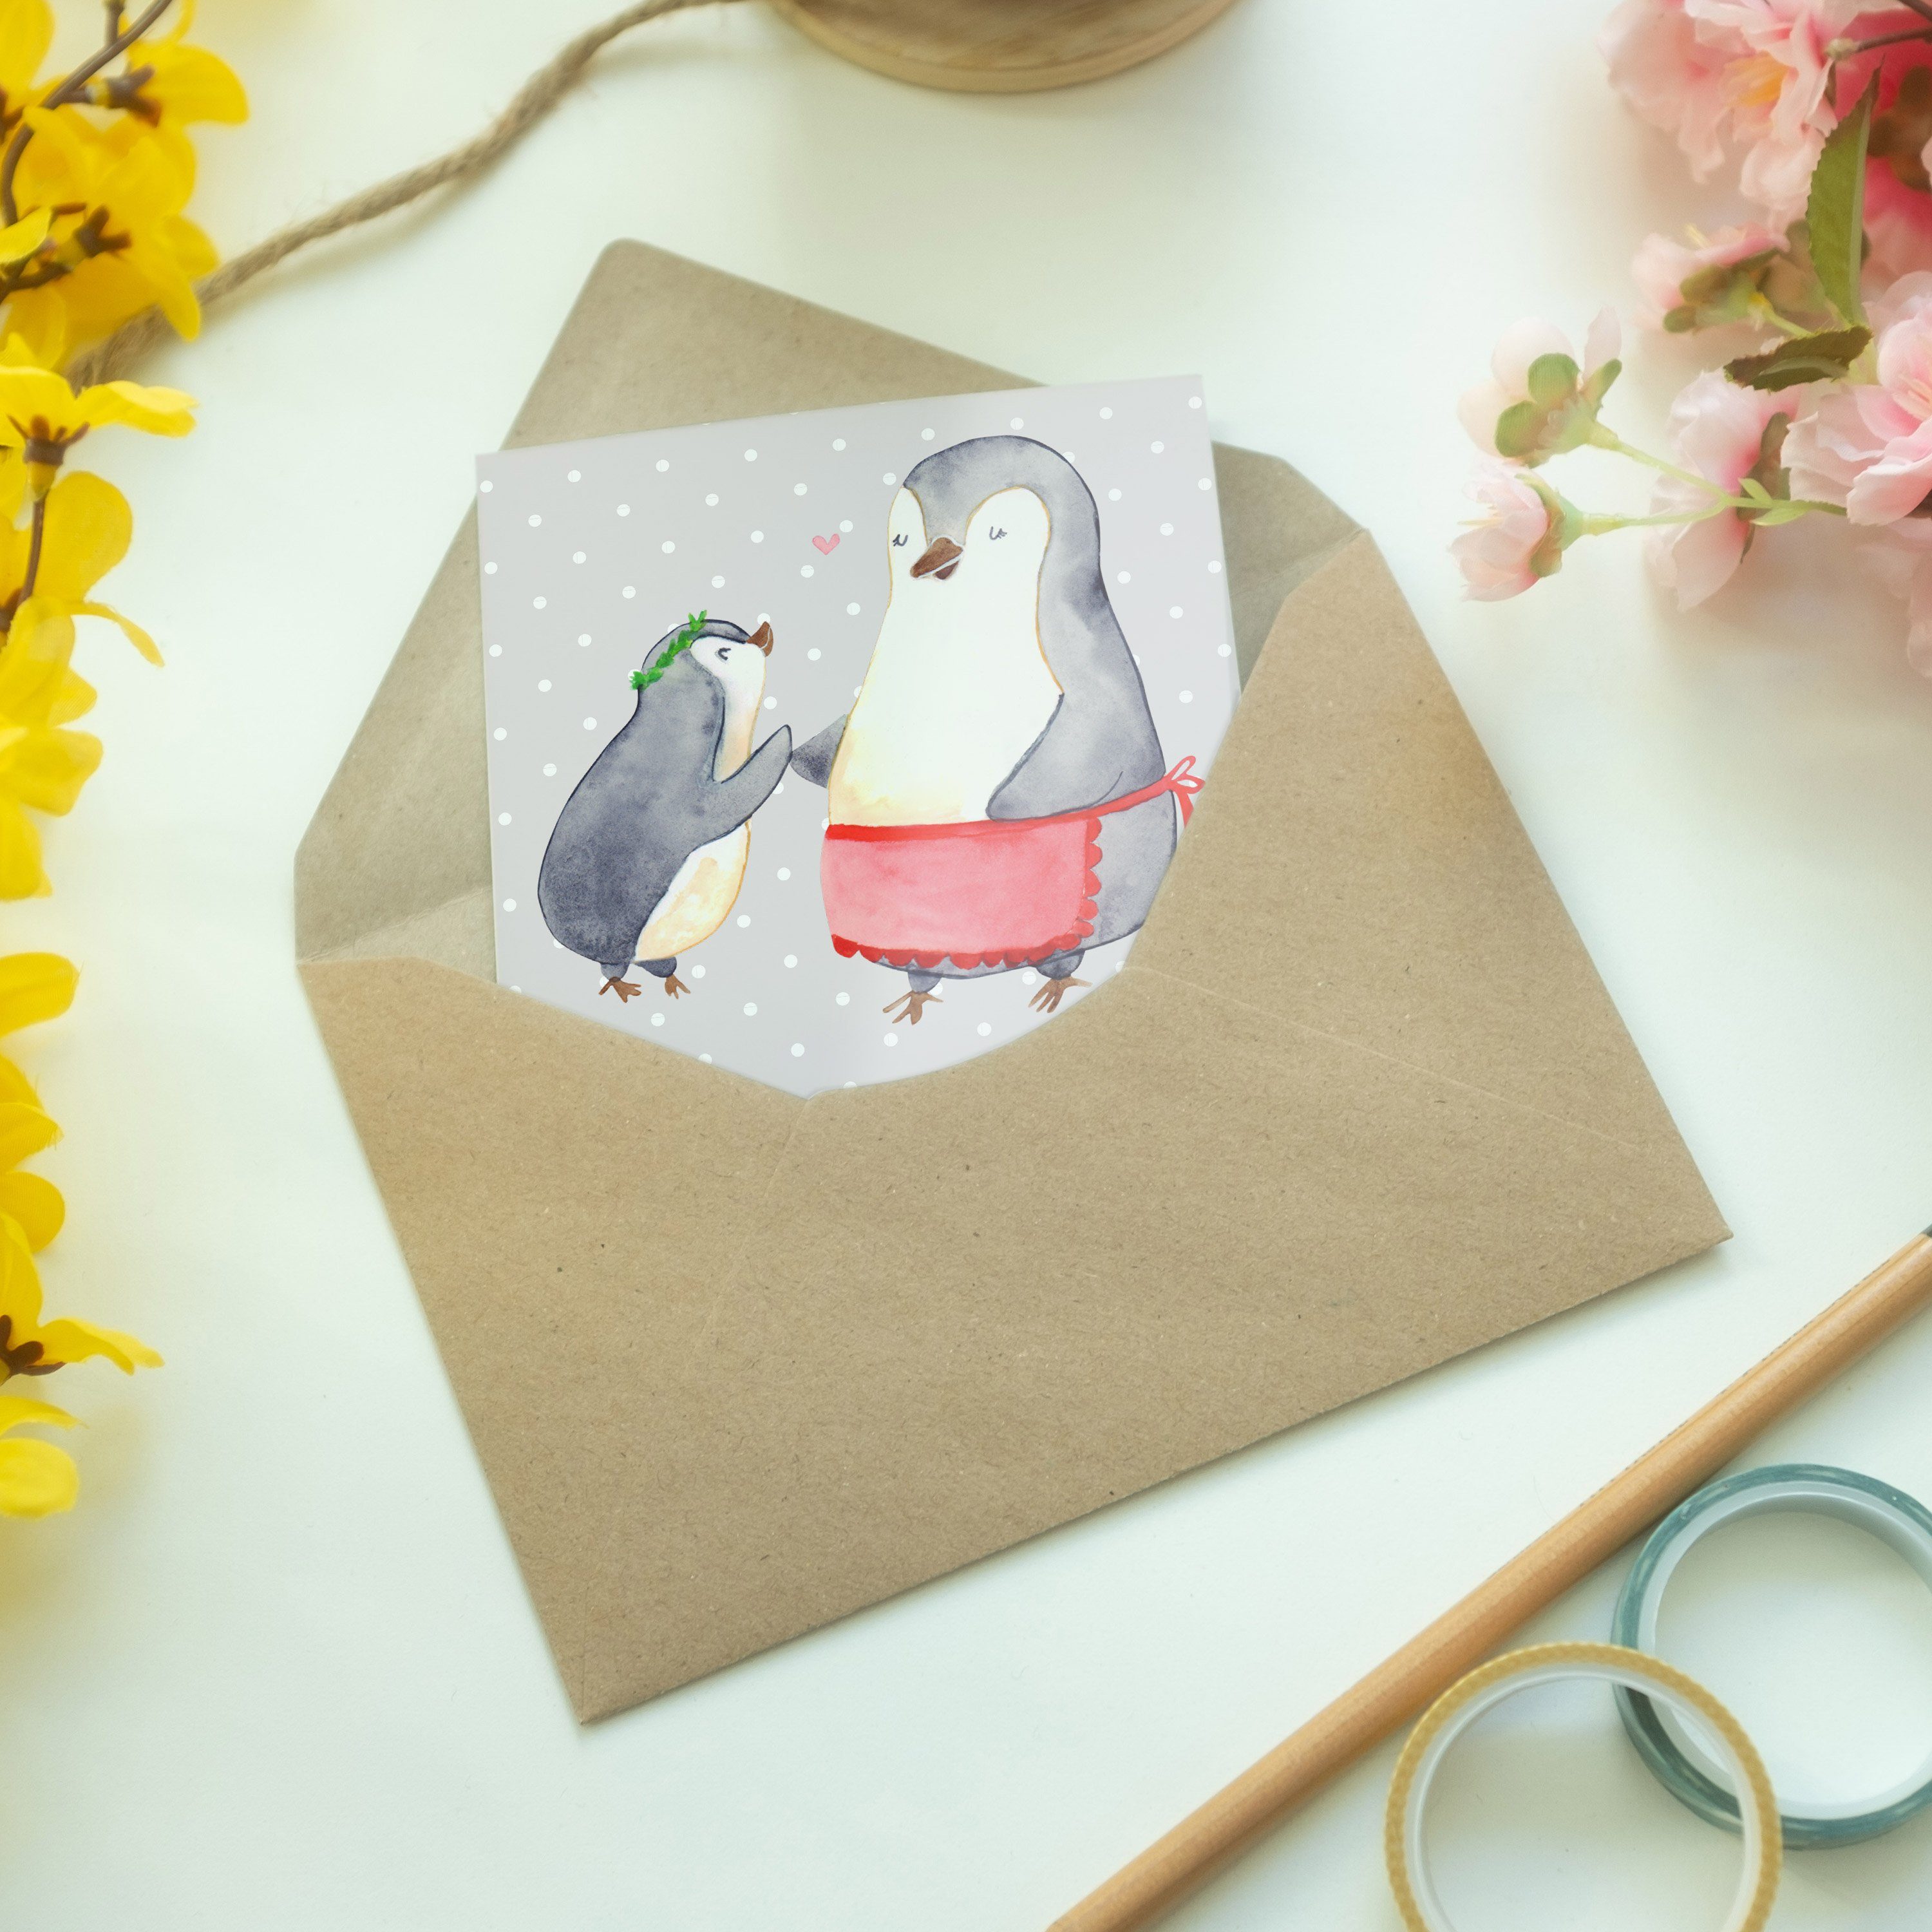 Mutti Pinguin - Grau Mr. - Mrs. Geschenk, & Pastell der Hochzeitskart Grußkarte Welt Beste Panda